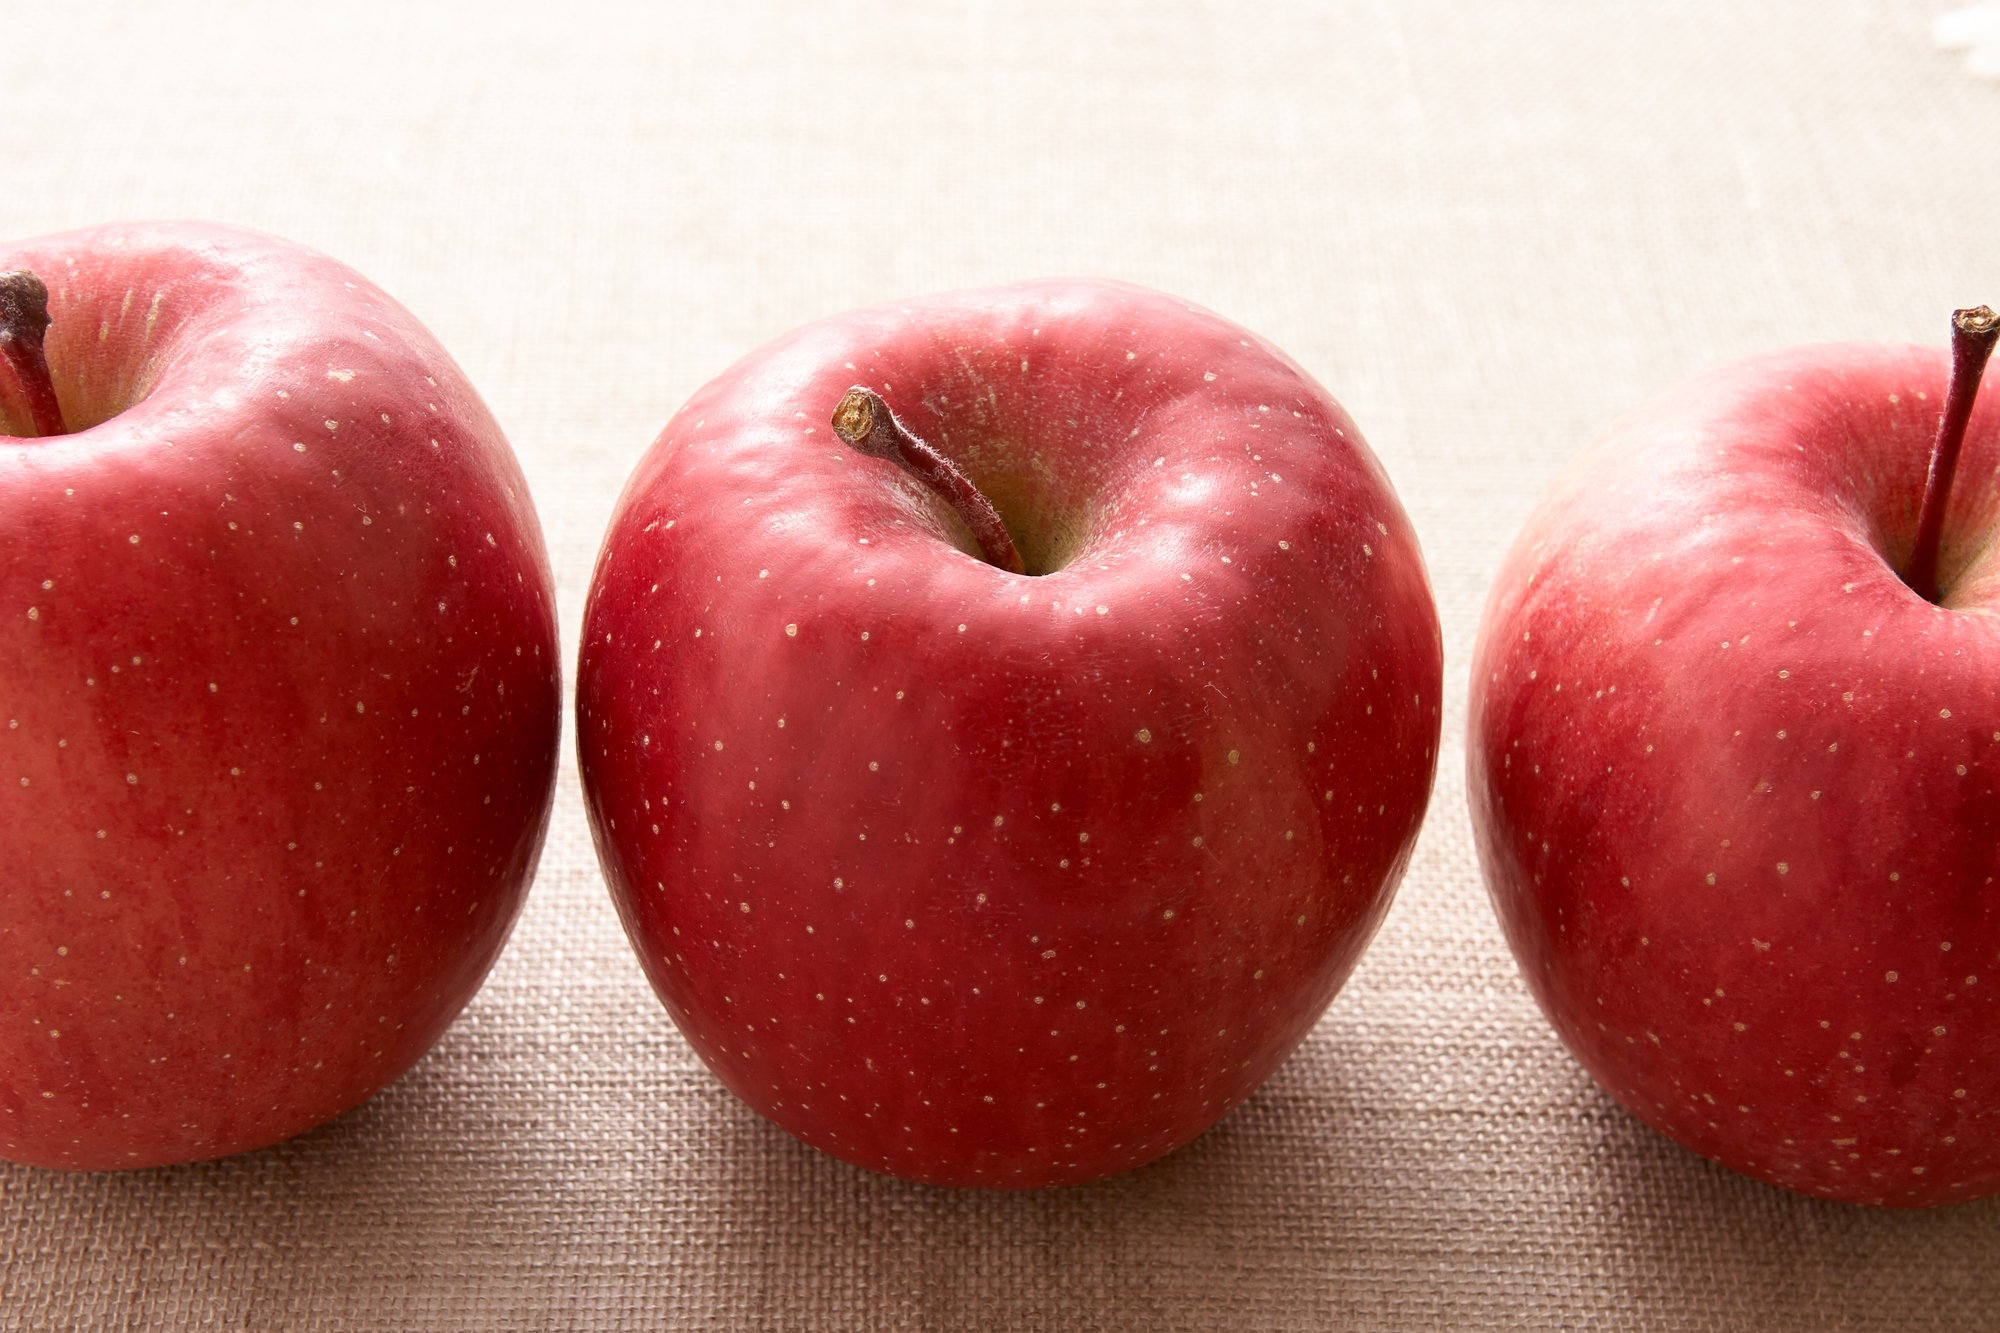 リンゴが3つ並んでいるイメージ画像